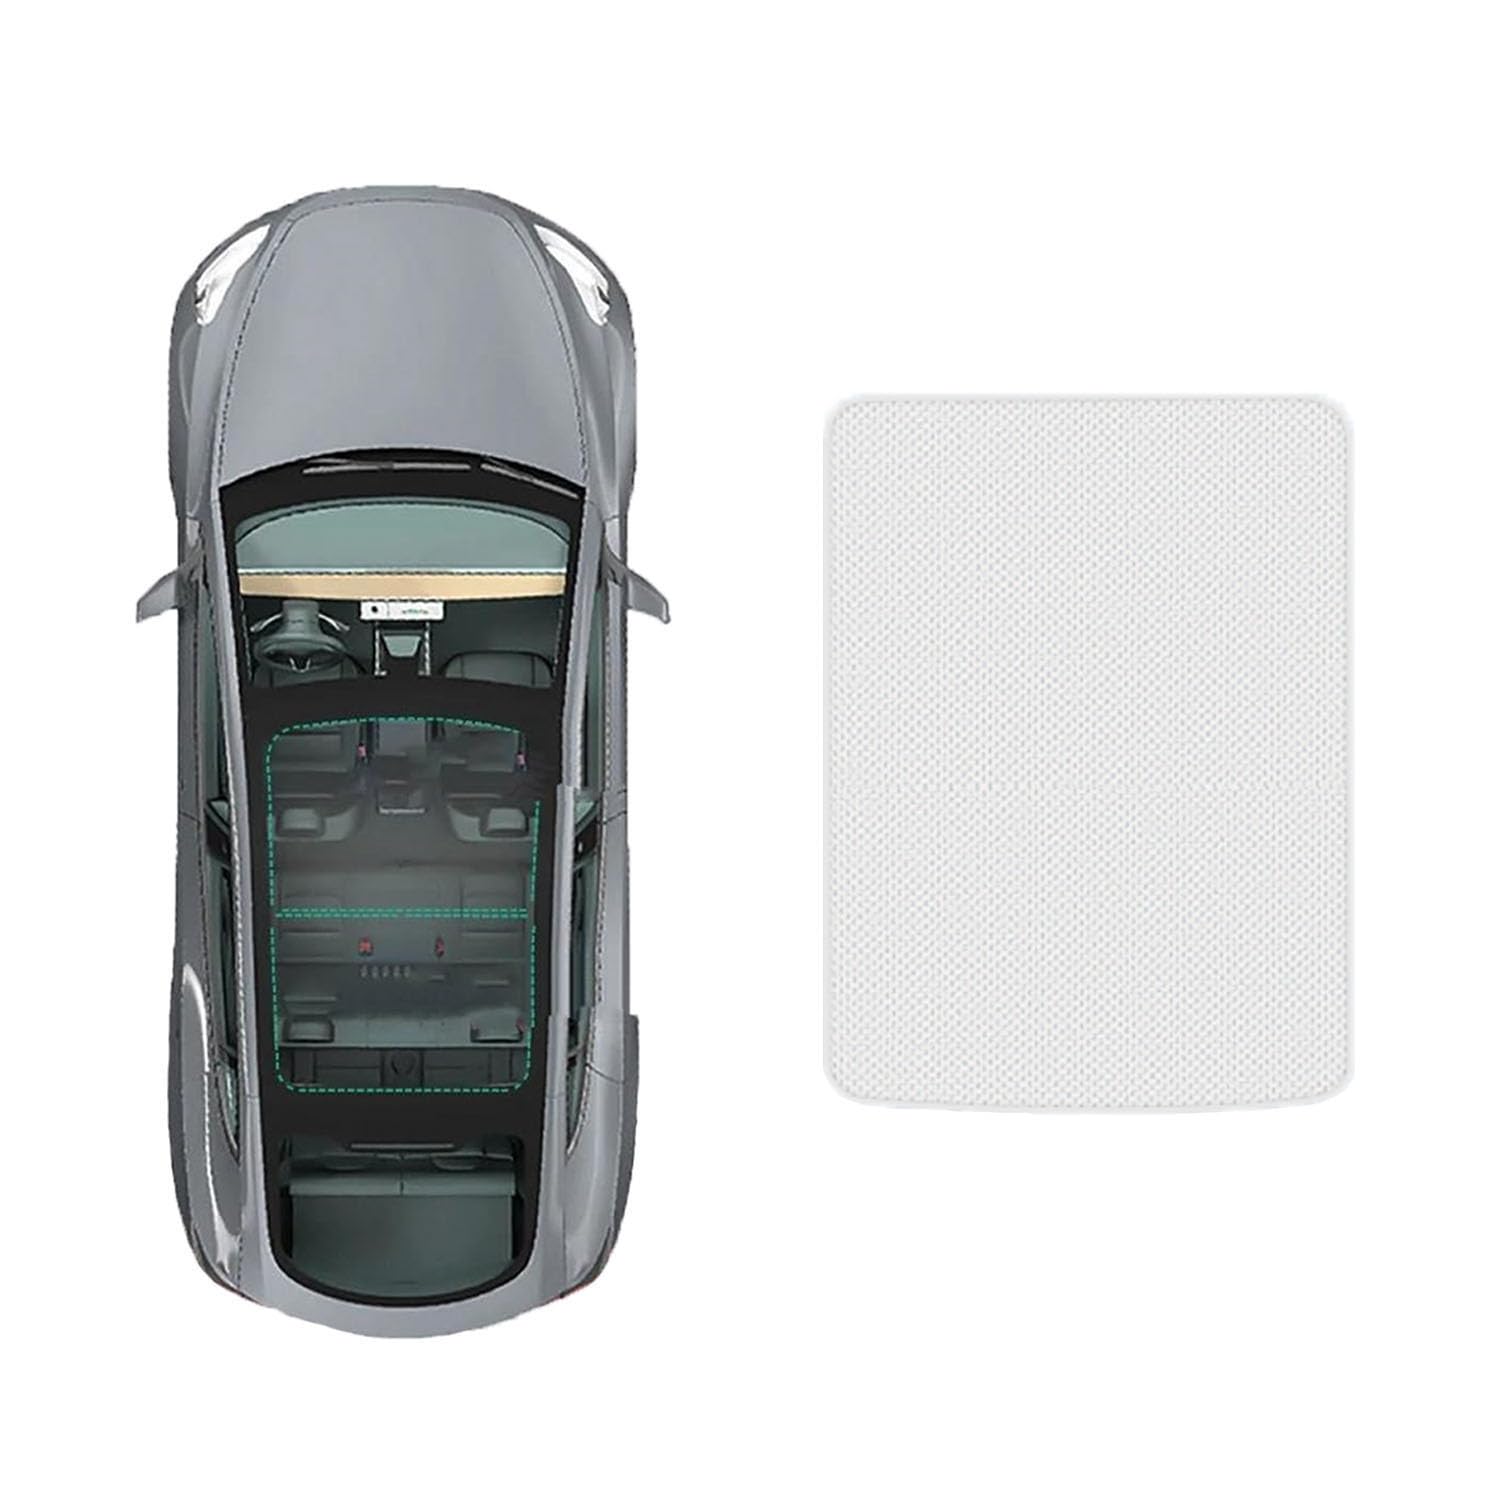 Auto-Schiebedach-Beschattung Für Audi A3L 2021-,Auto Schiebedach Sonnenschutz Dachfenster Dach Wärme Isolierung Beschattung Innen,A-Gray white regular Style von LiuROSE